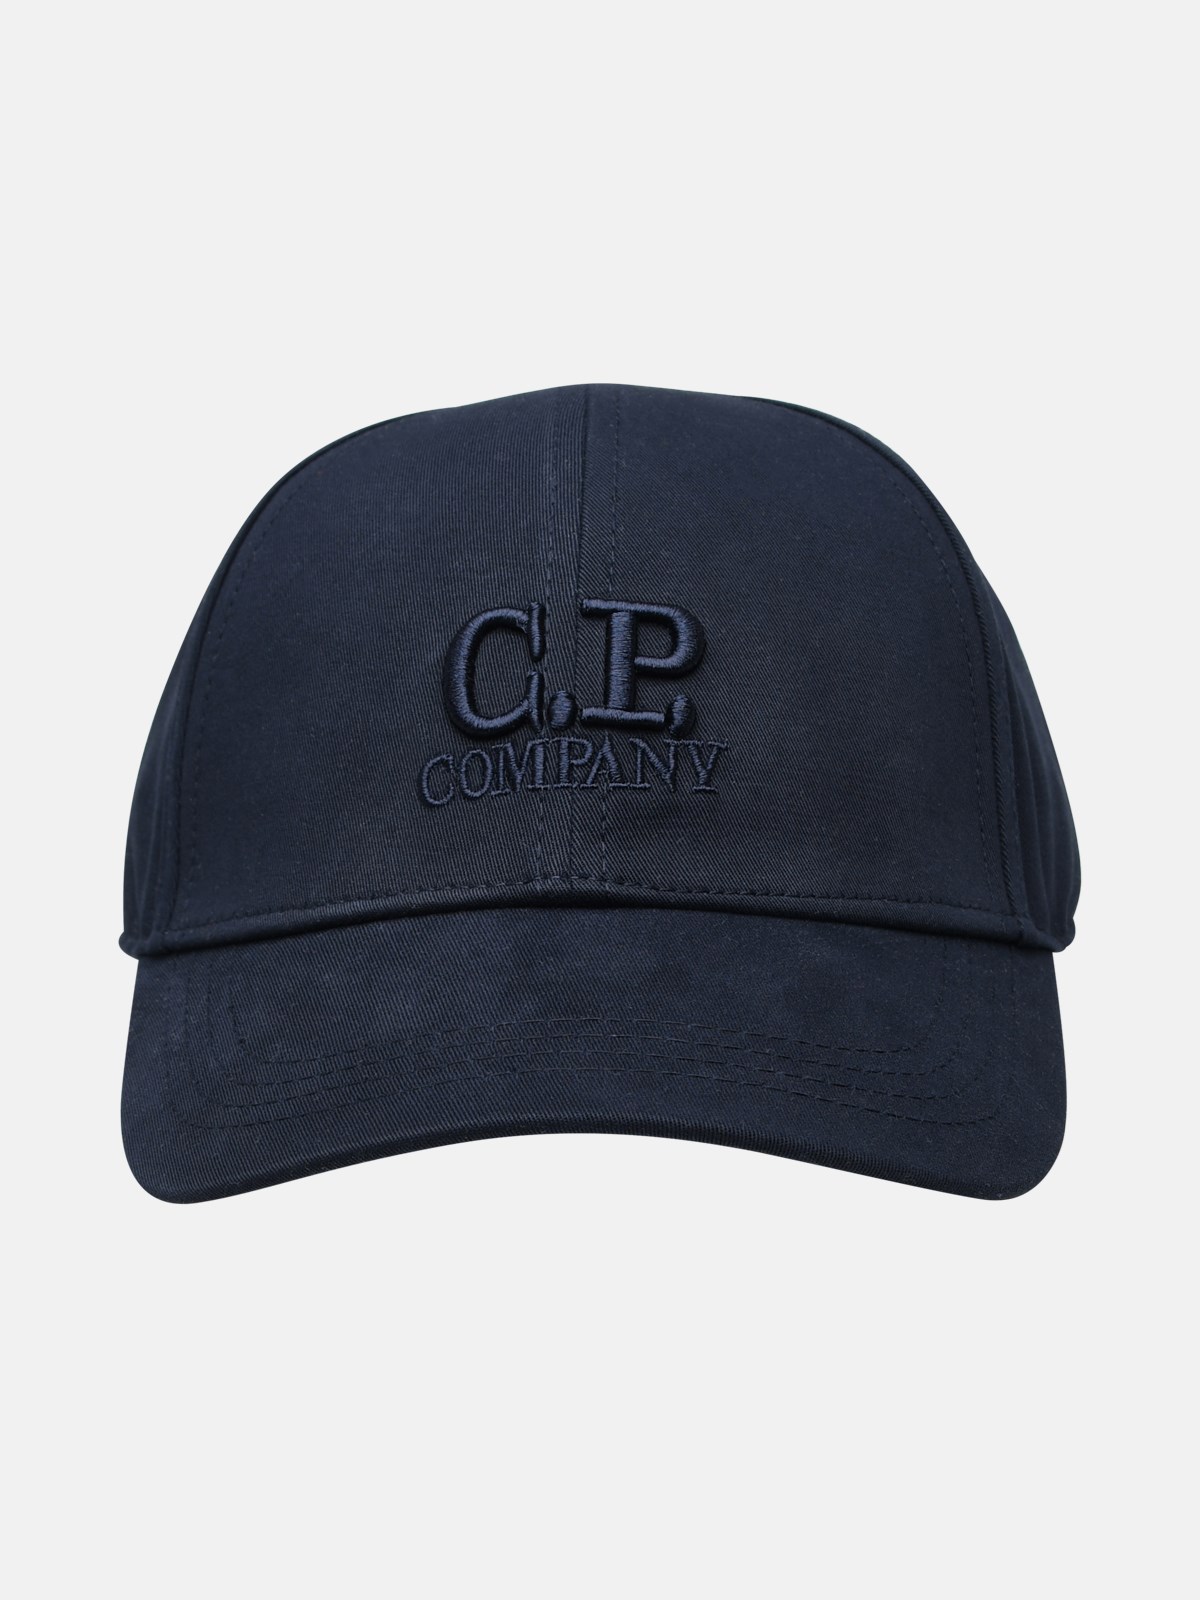 C.P. COMPANY NAVY COTTON CAP